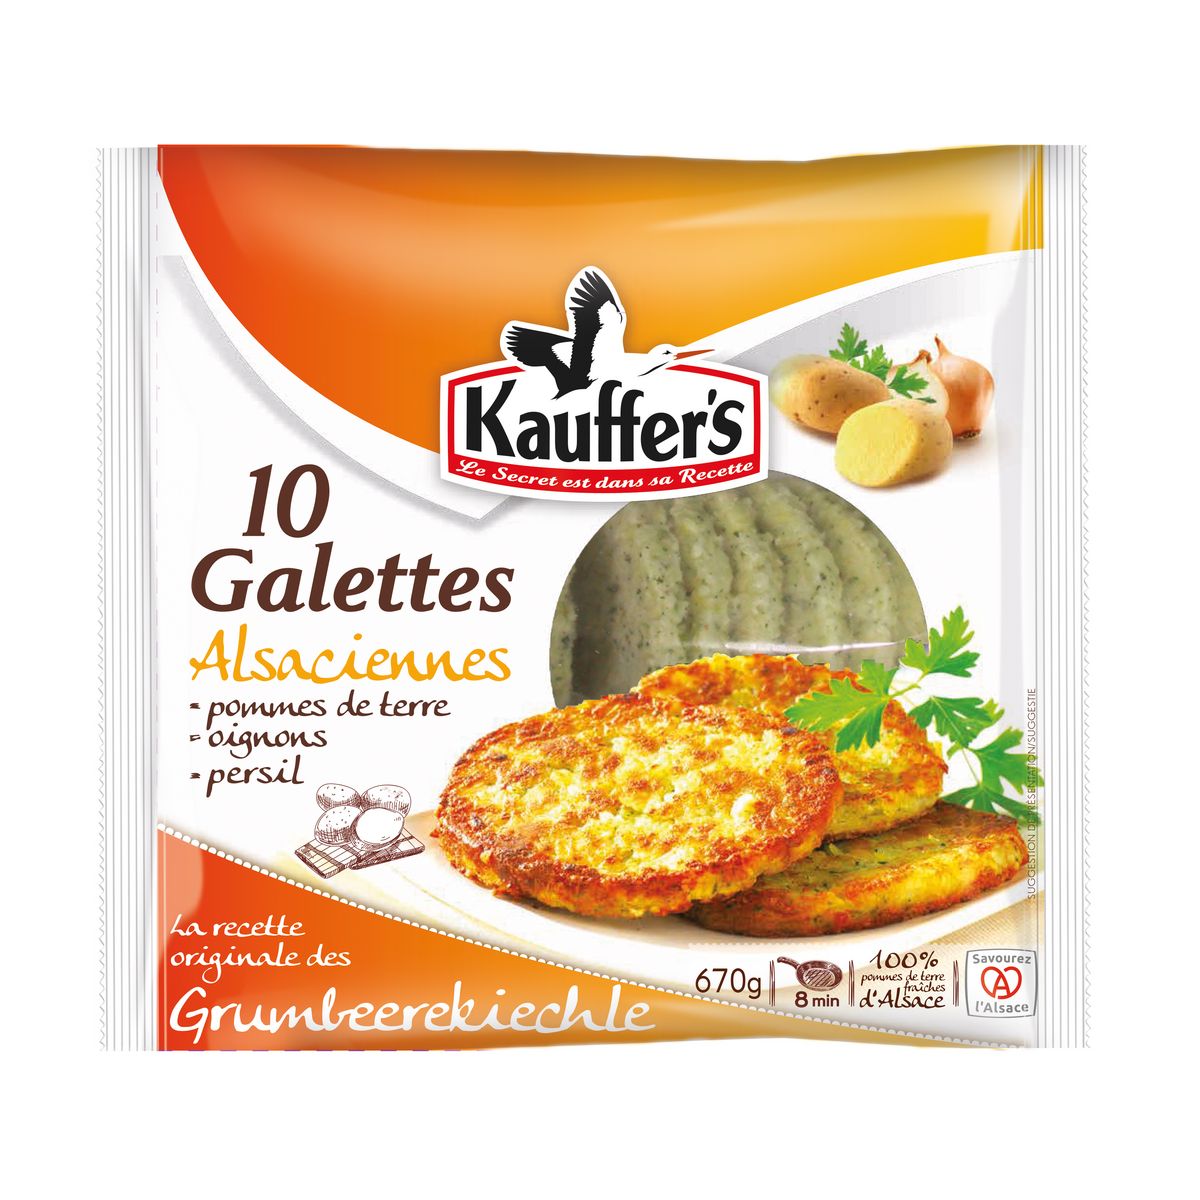 KAUFFER'S Galettes Alsaciennes pomme de terre oignons persil 10 pièces 670g